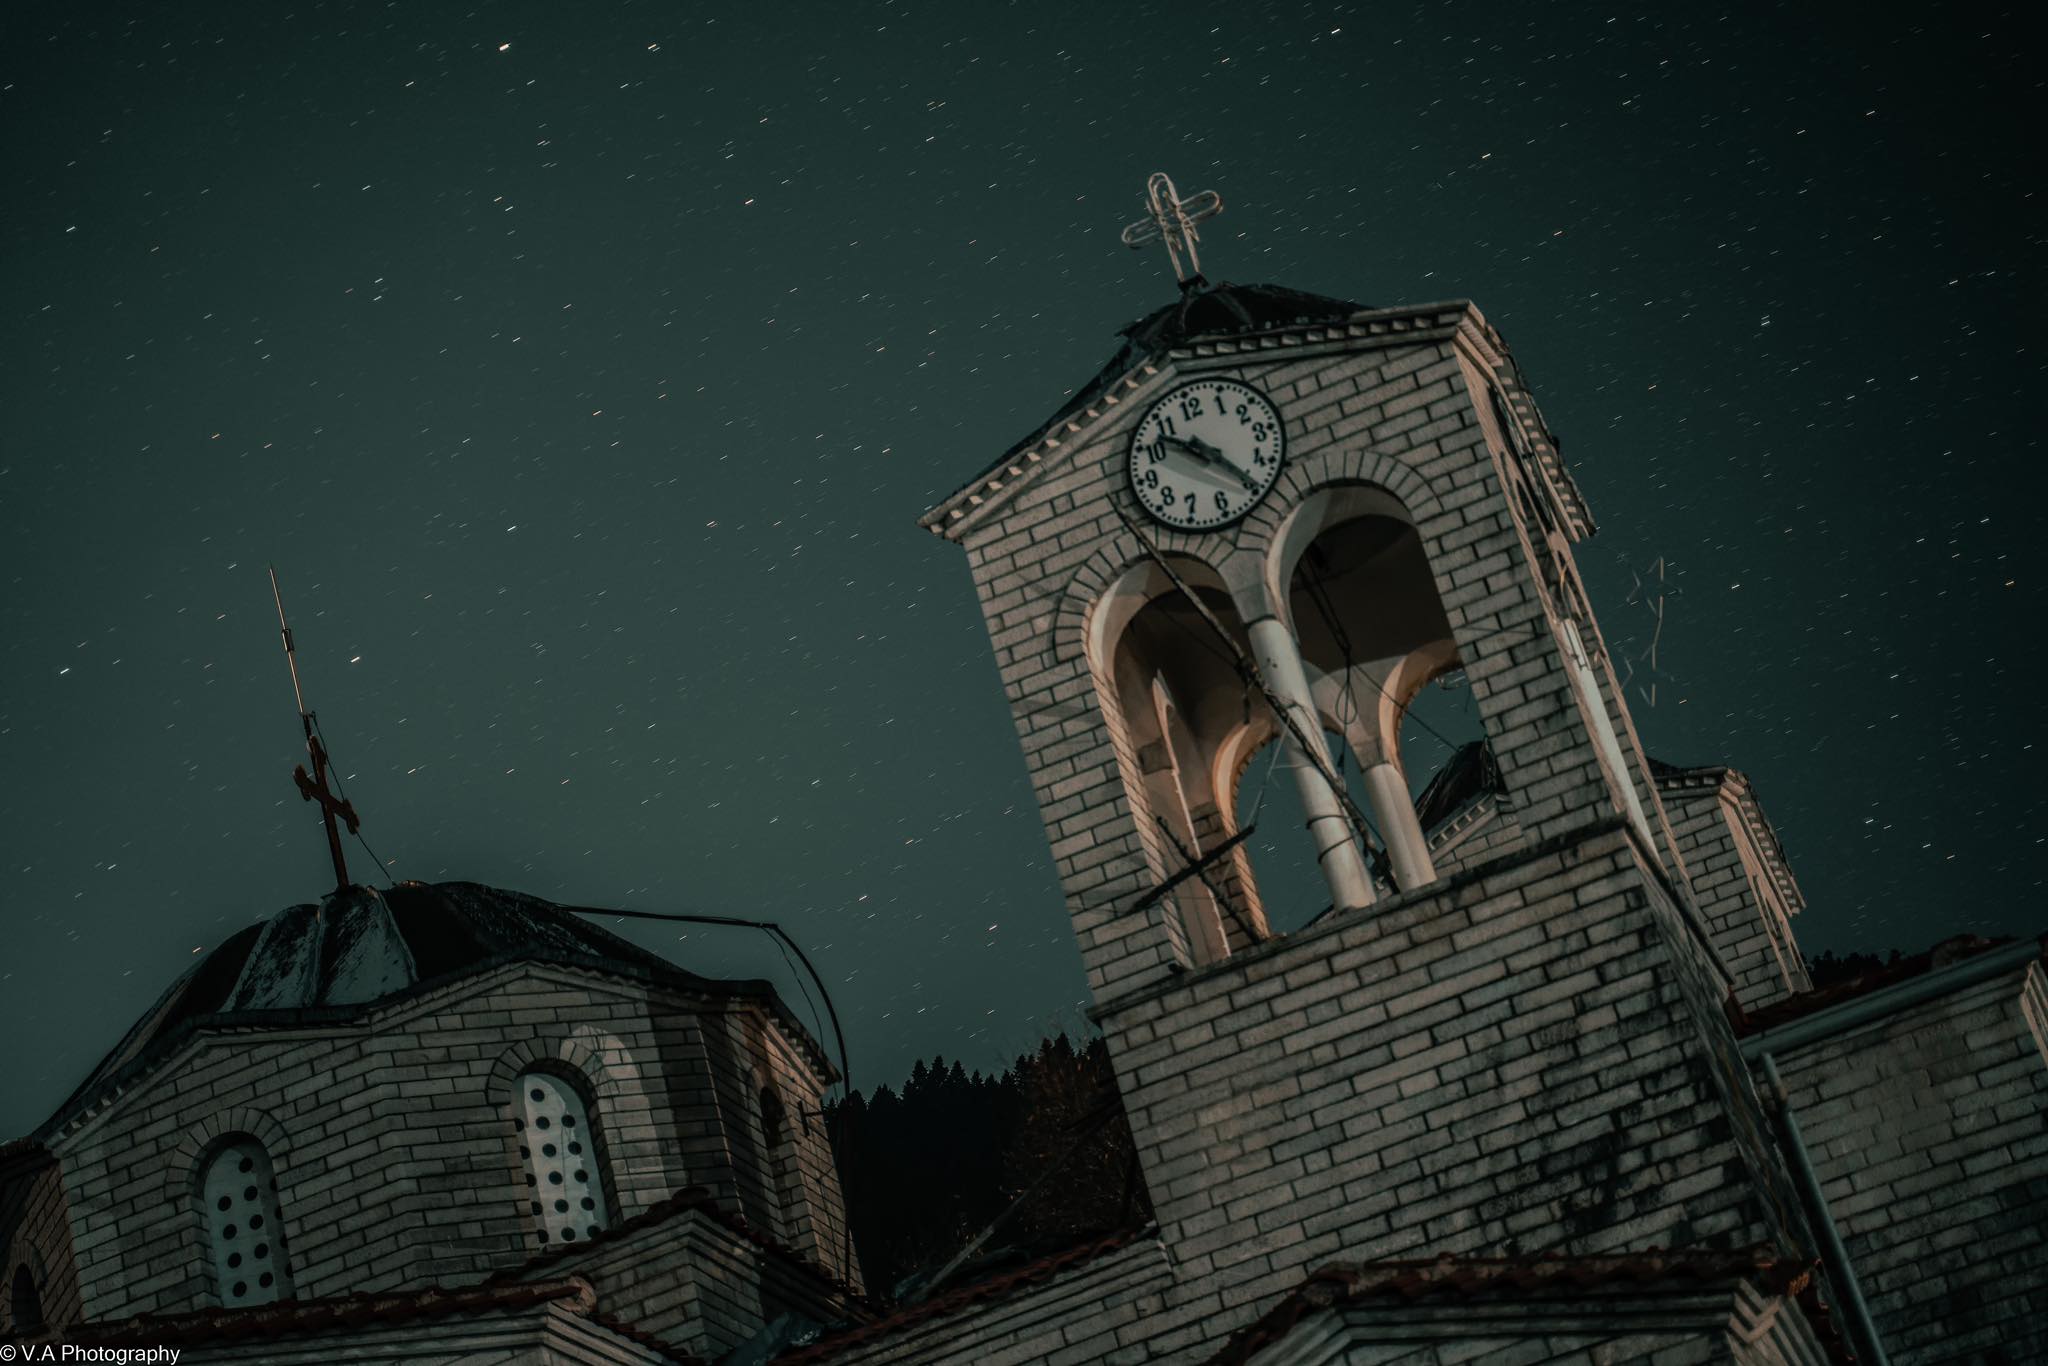 Απίστευτες εικόνες από την εκκλησία του Ροπωτού Τρικάλων που βυθίζεται (Βίντεο)